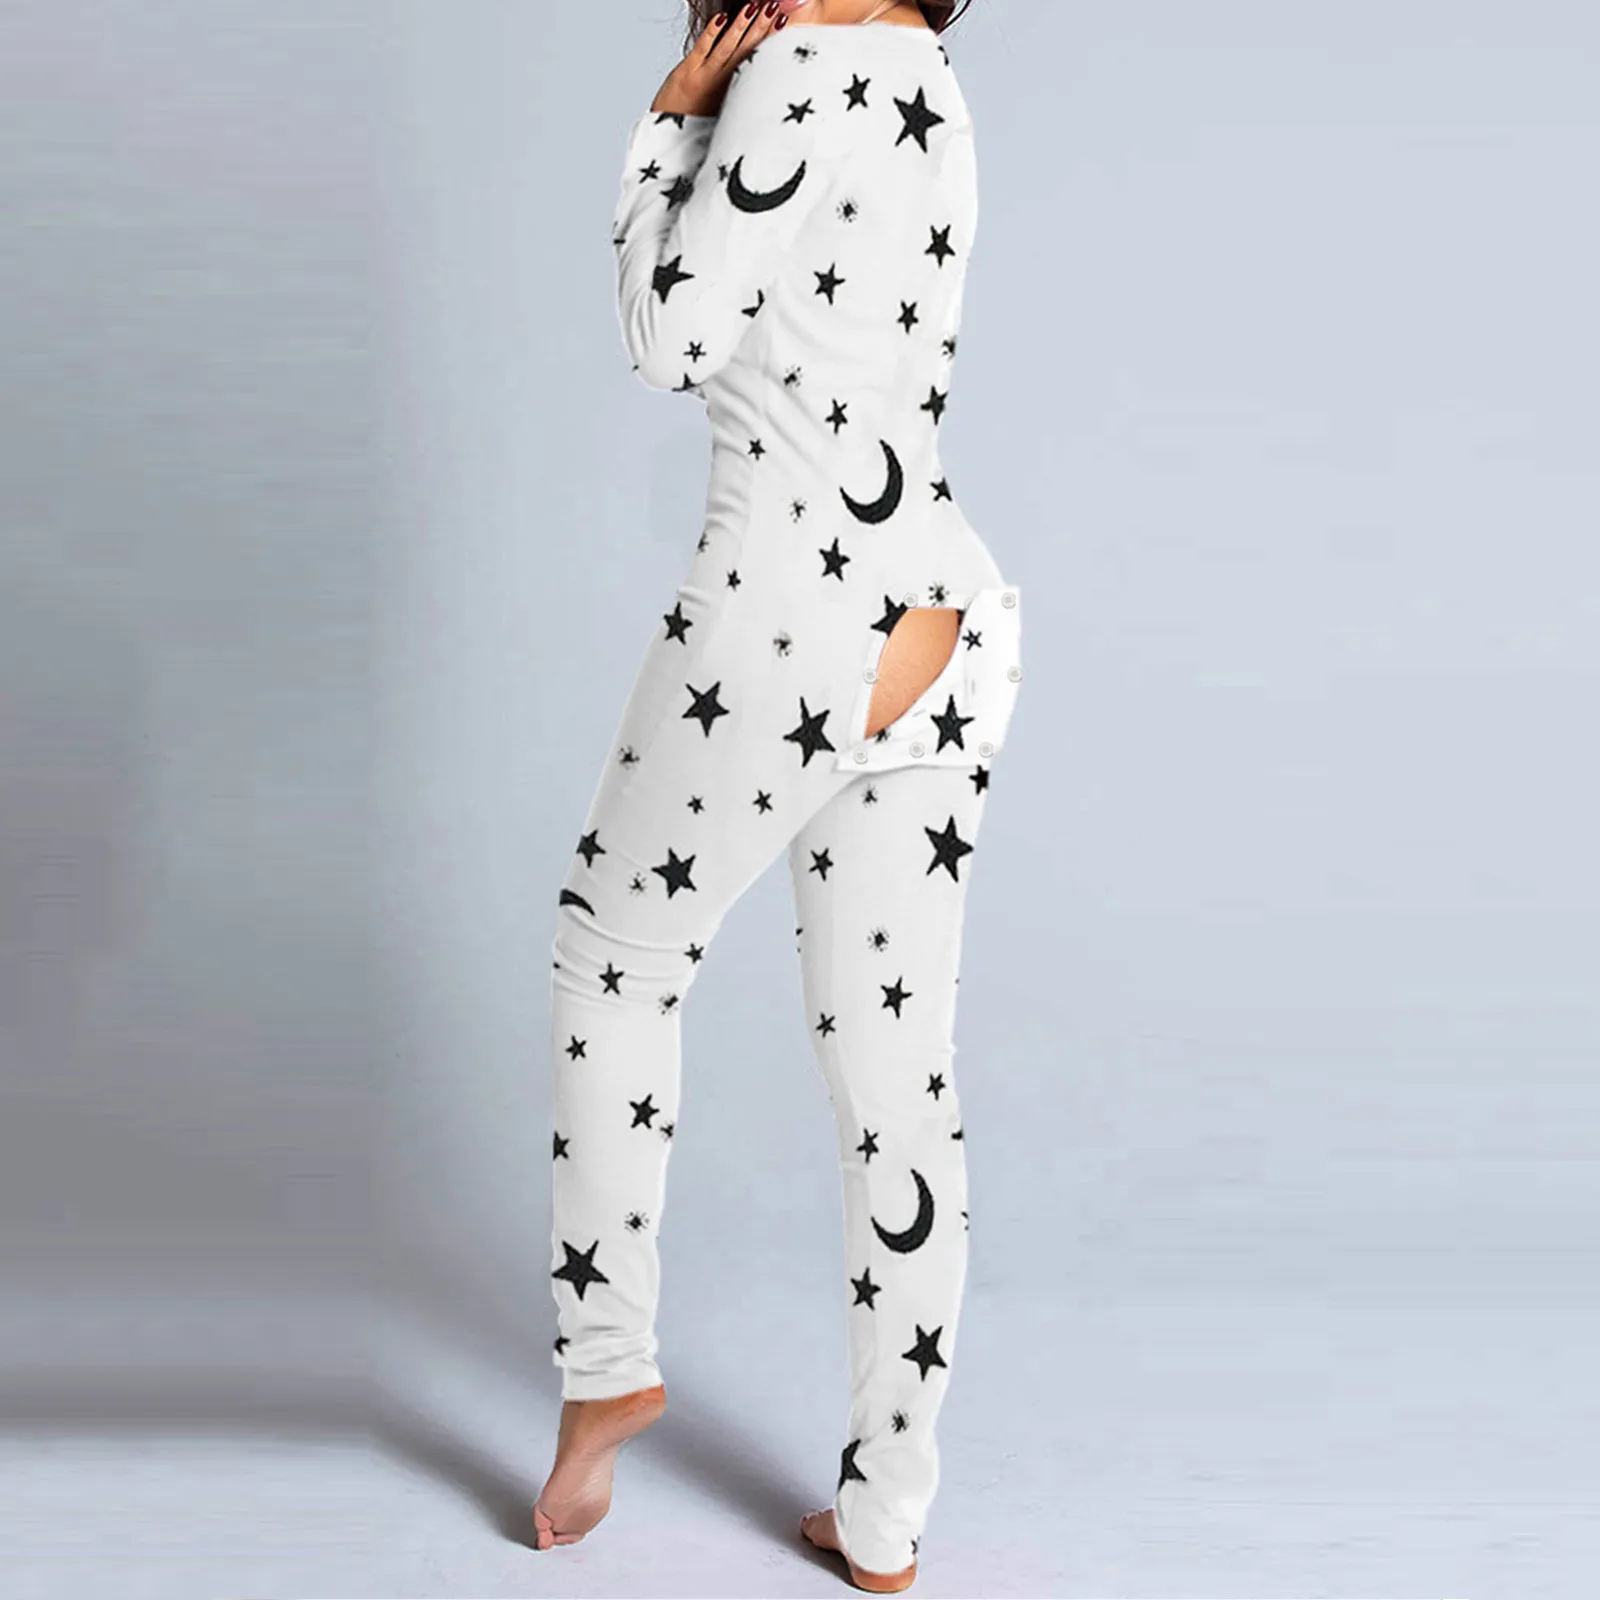 

Модная женская пижама-комбинезон на пуговицах спереди функциональная модель с застежкой на пуговицах женская пижама пикантная одежда для ...